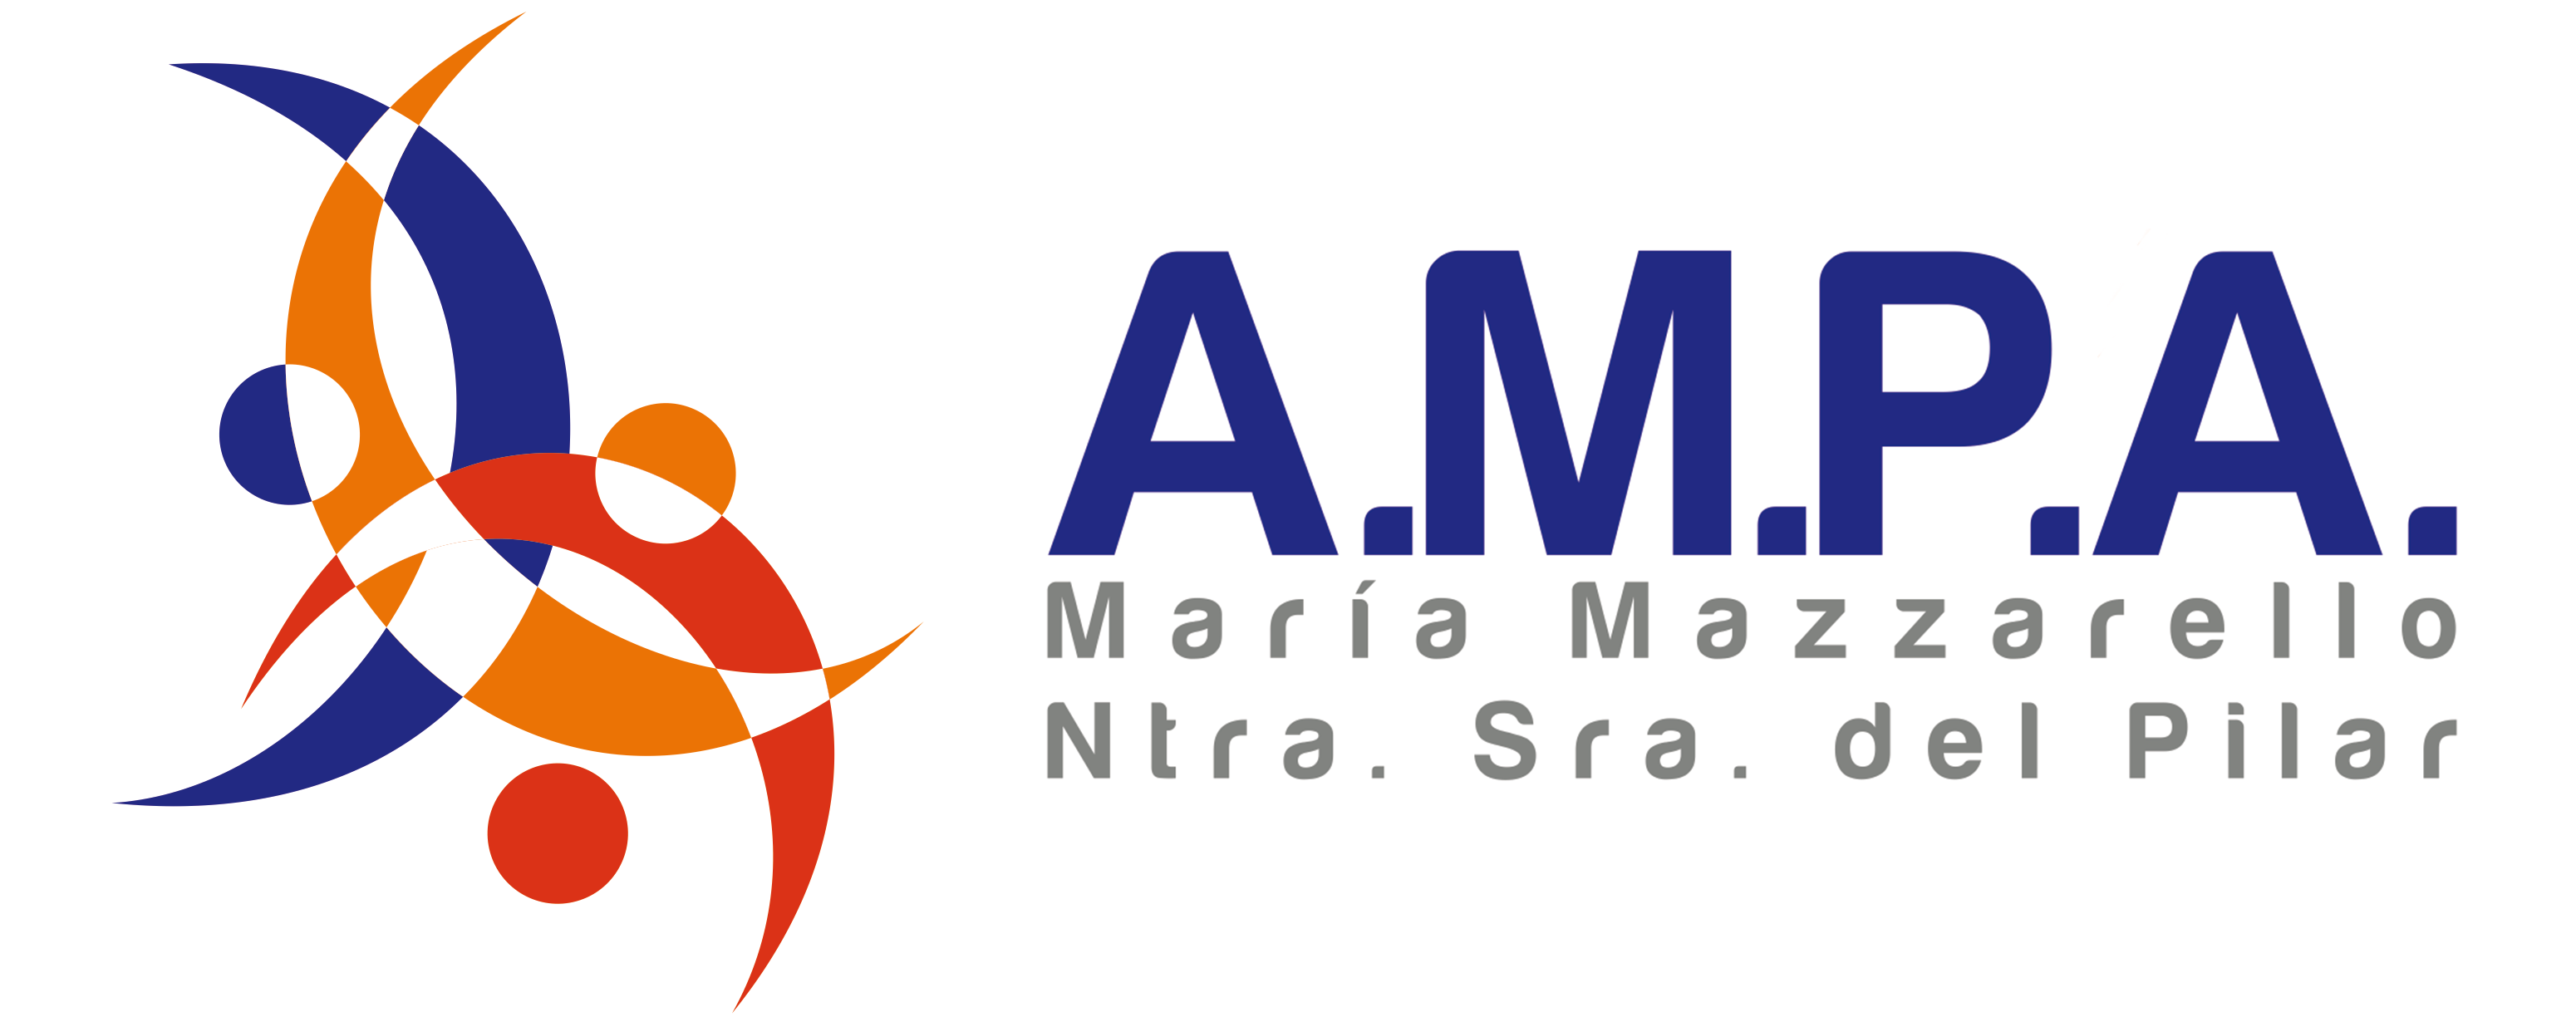 AMPA María Mazzarello